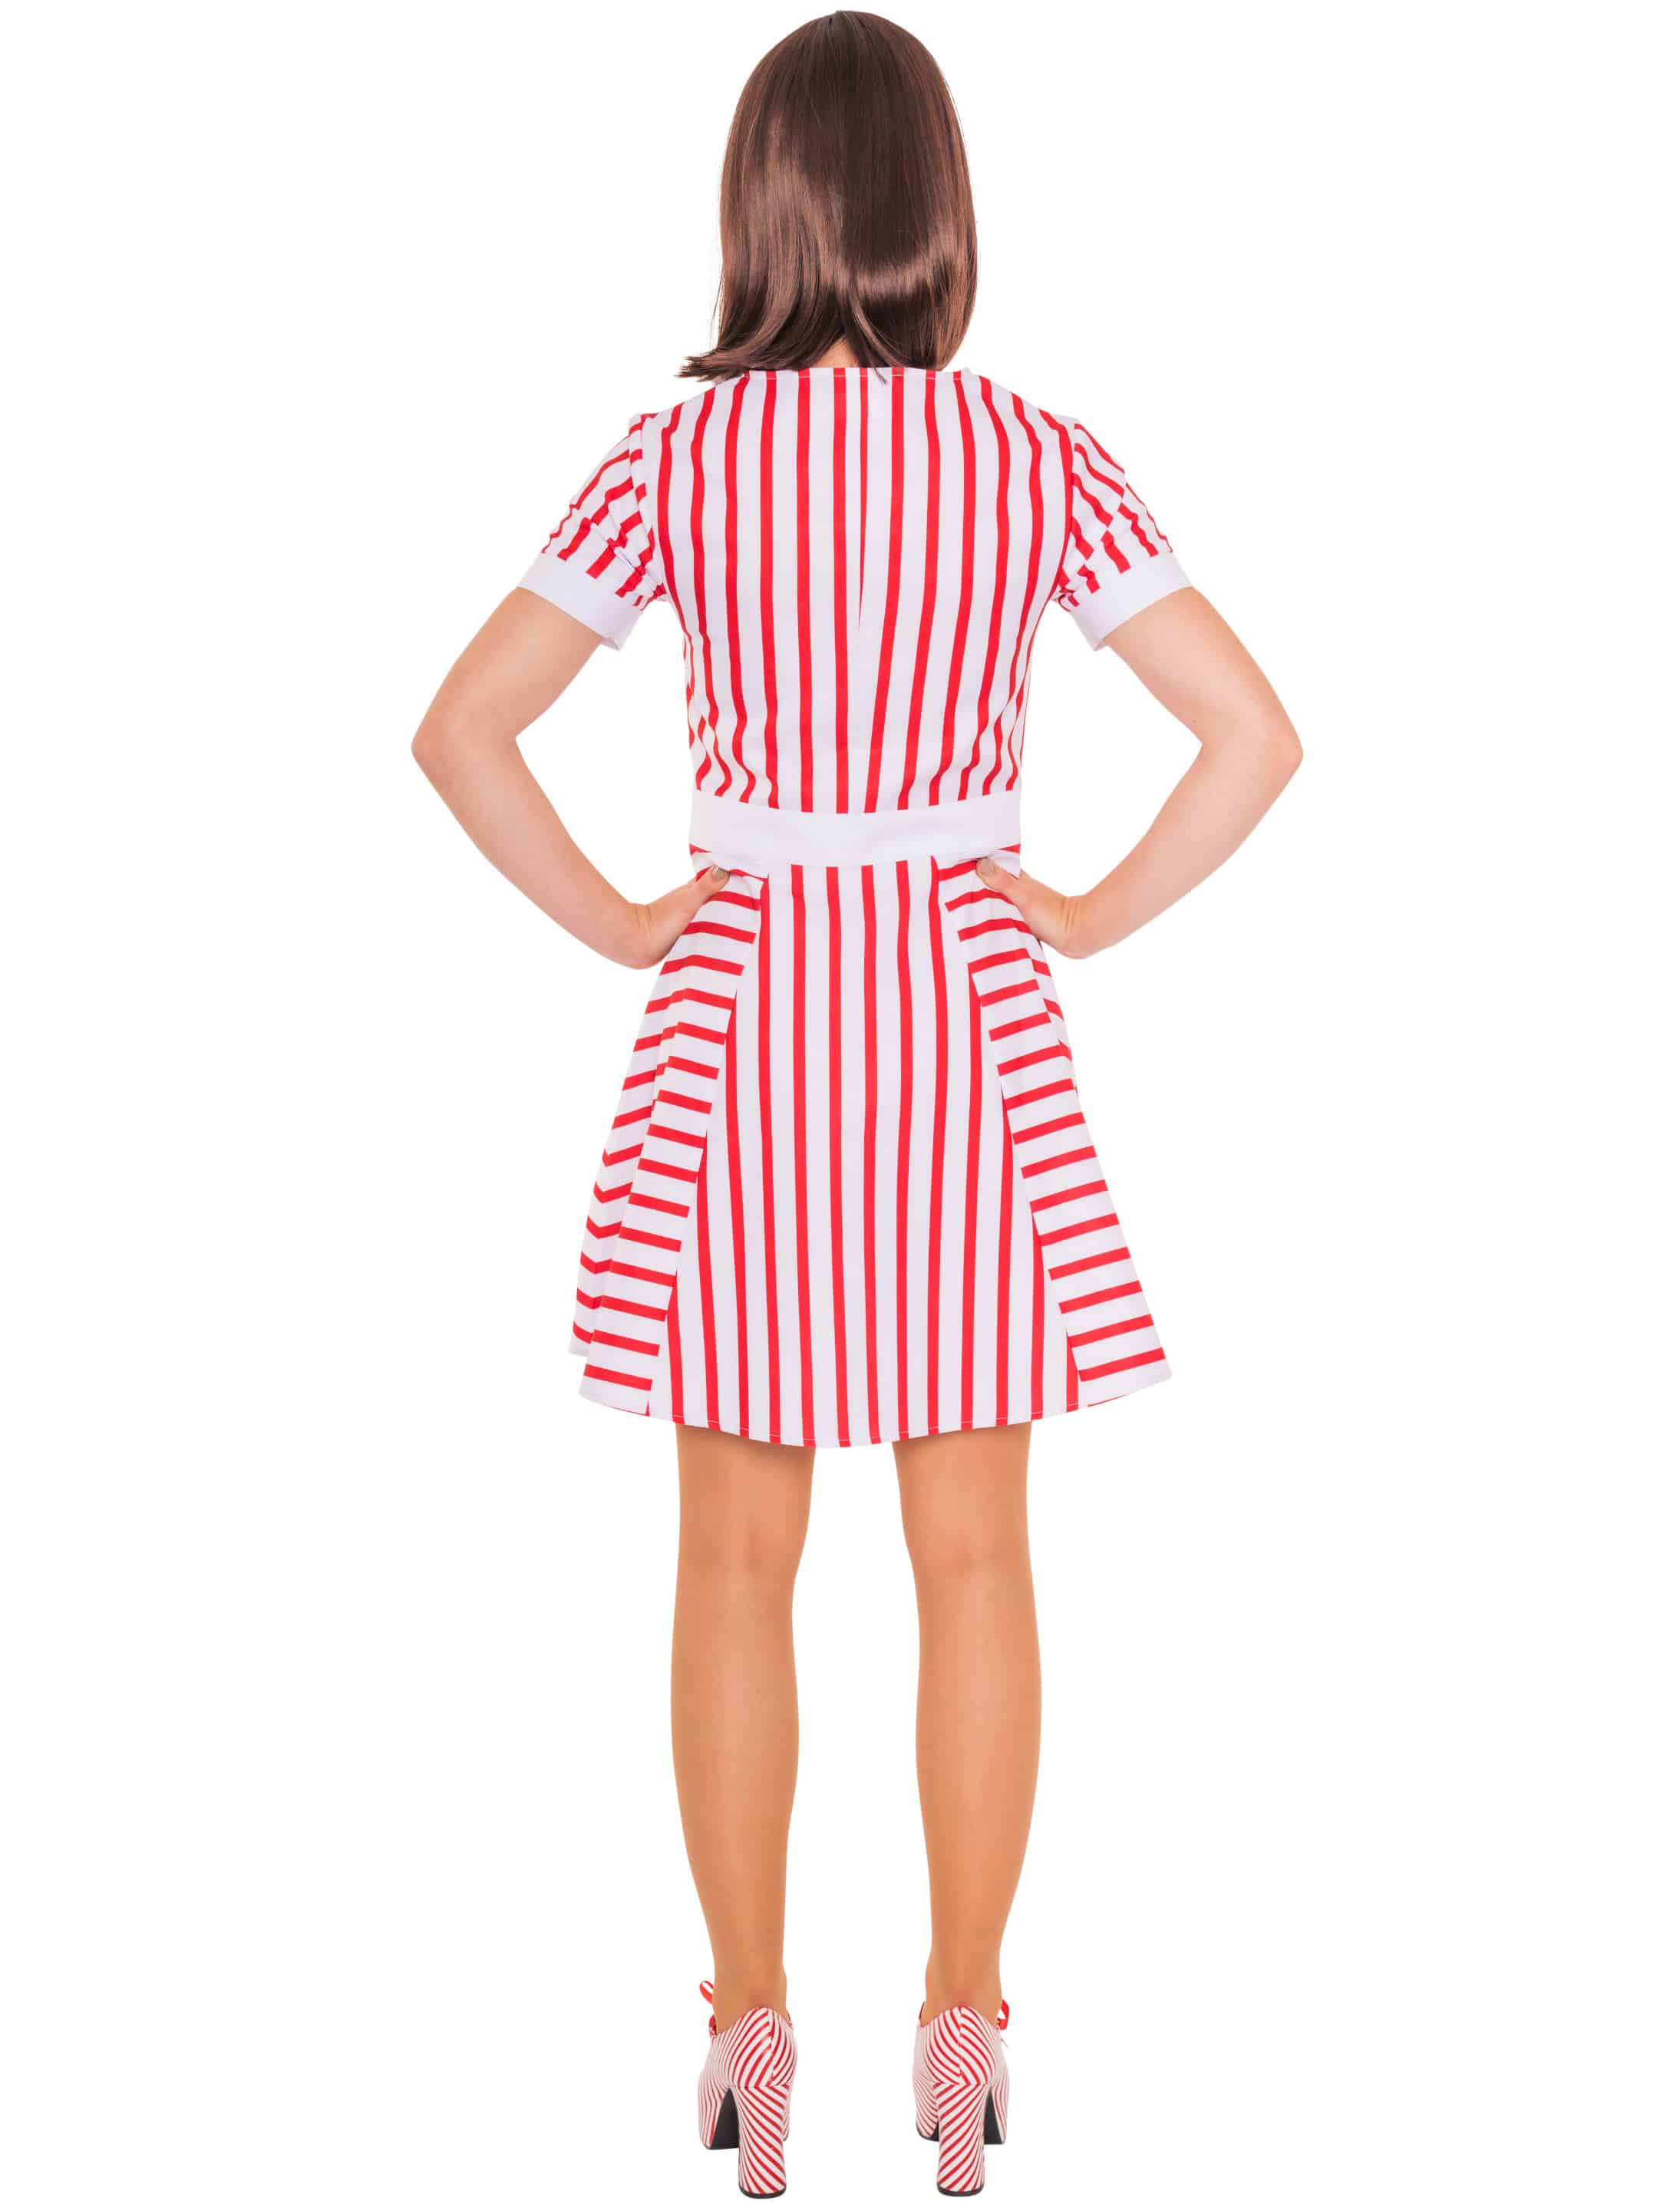 Kleid gestreift mit Kragen und Schürze rot/weiß L